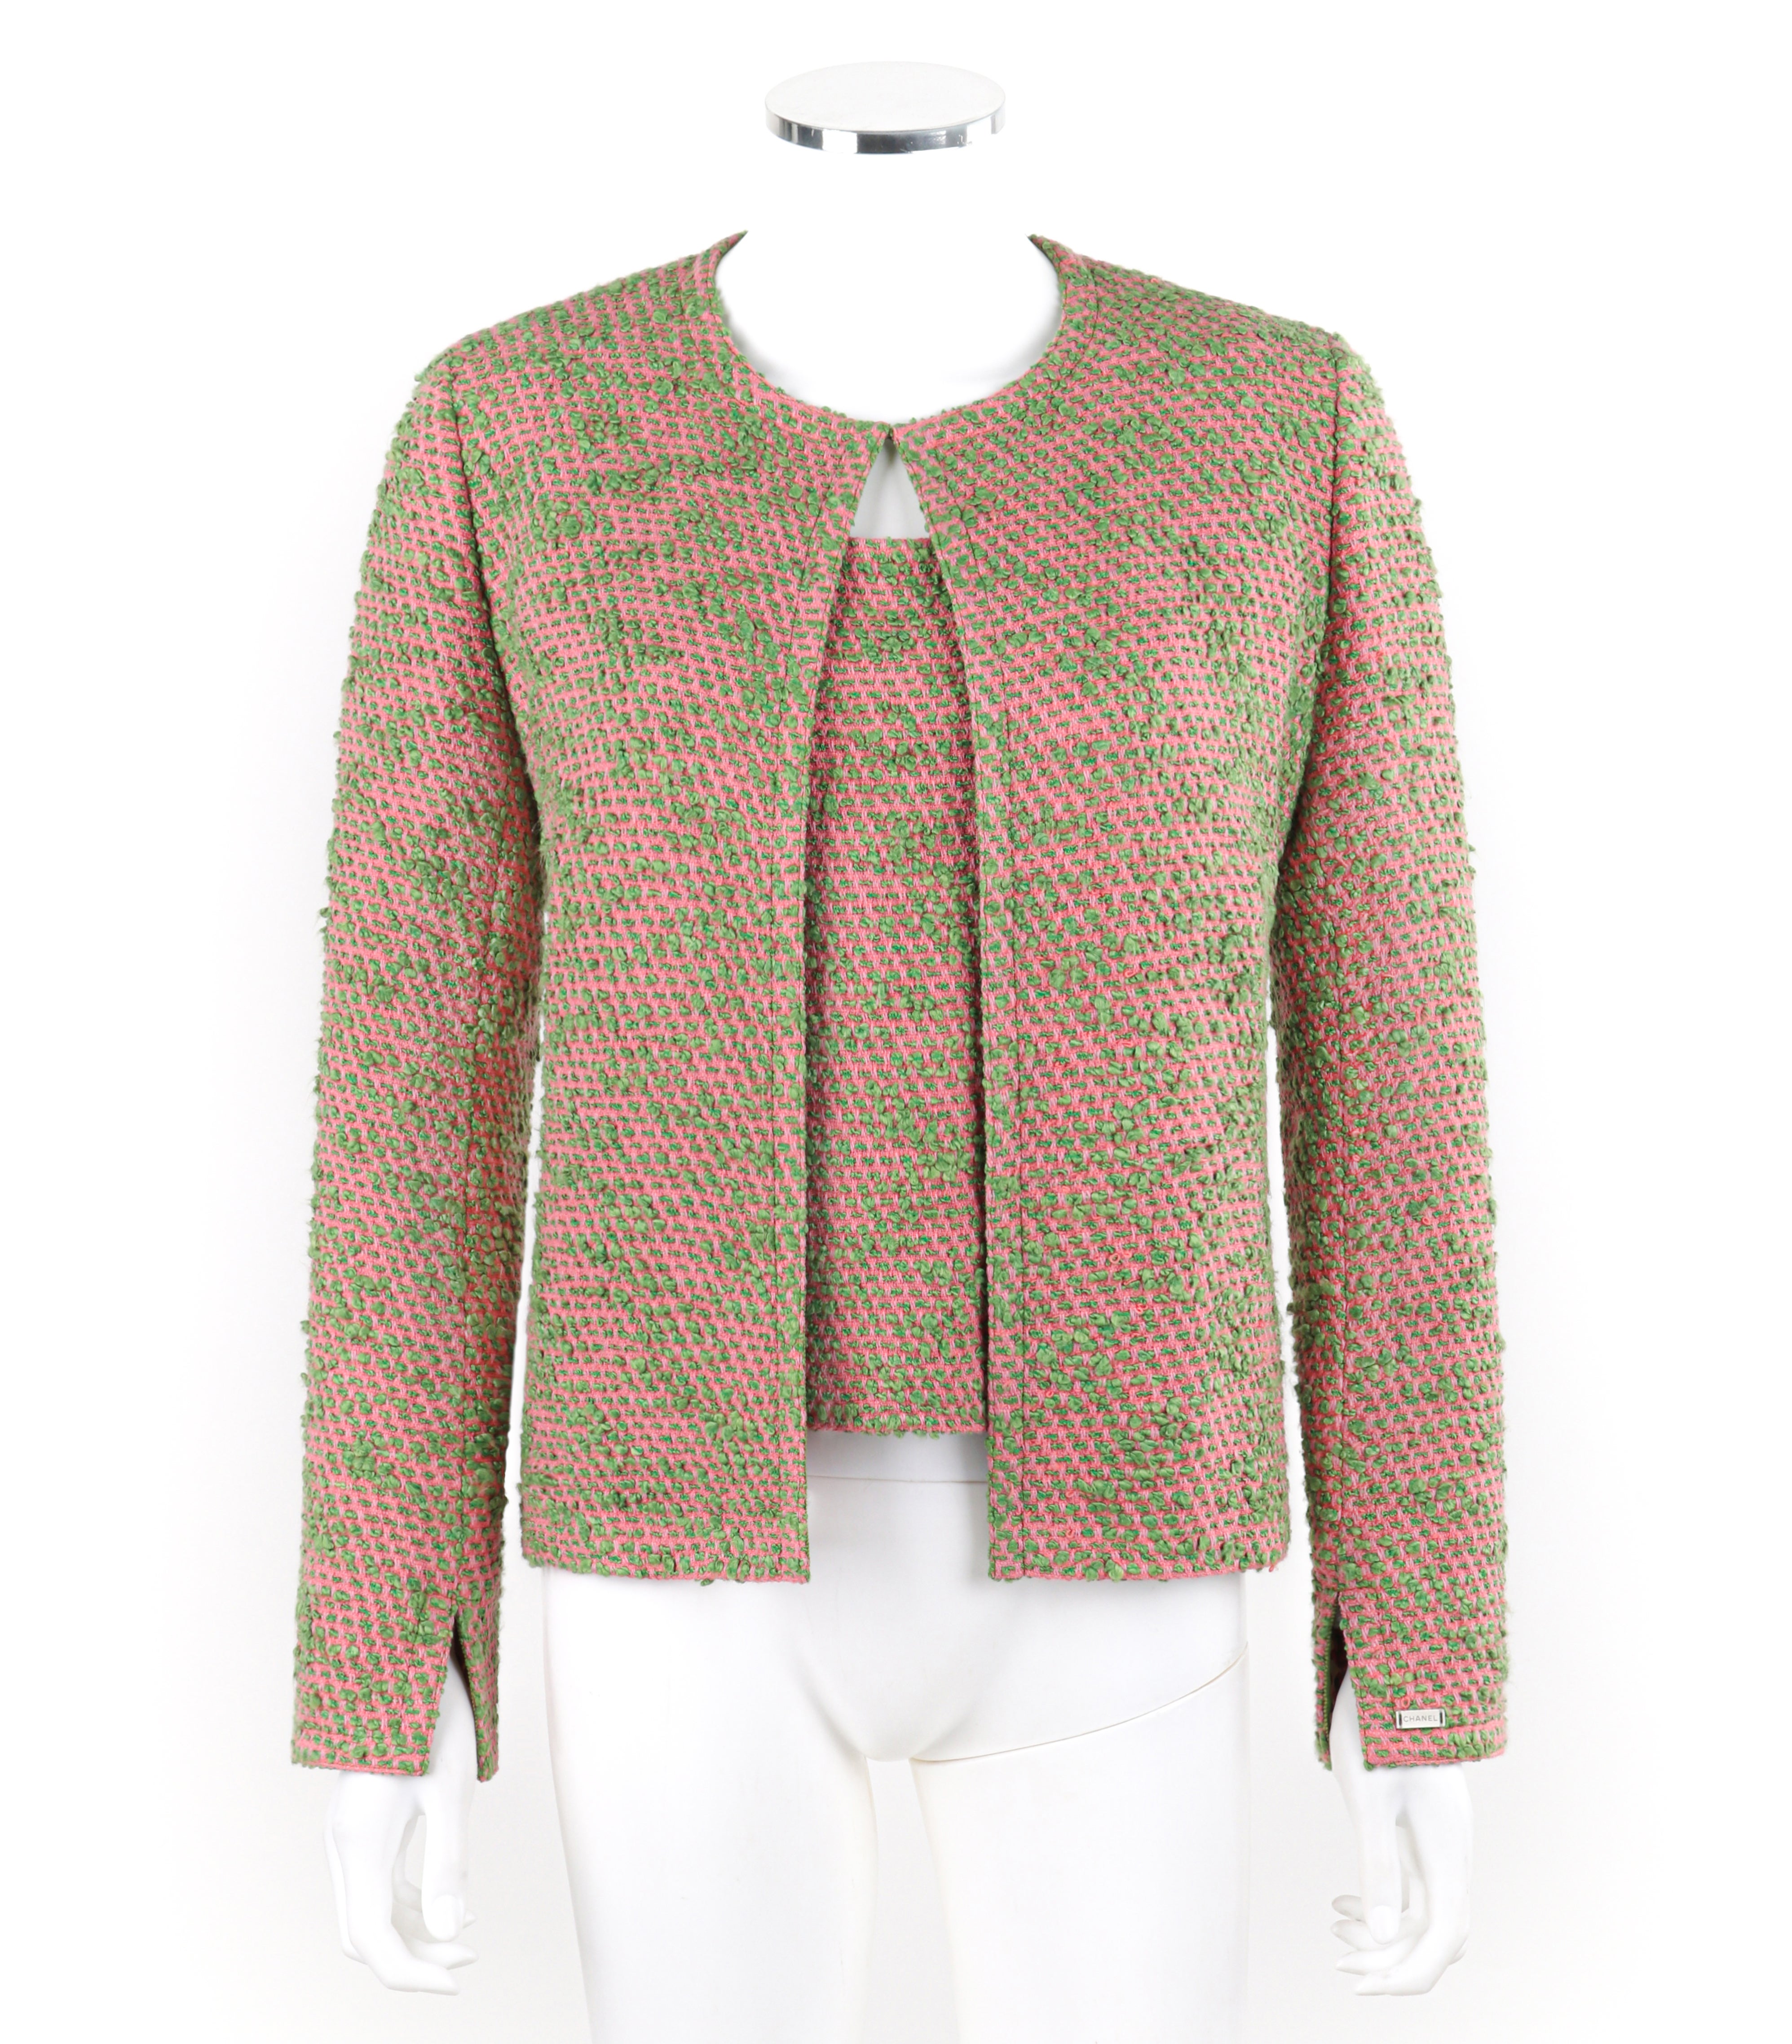 Marque / Fabricant : Chanel
Circa : 2000s
Designer : Karl Lagerfeld
Style : Ensemble veste et top
Couleur(s) : Nuances de rose, vert, blanc, violet, bleu 
Doublée : Oui
Teneur en tissu marquée : 